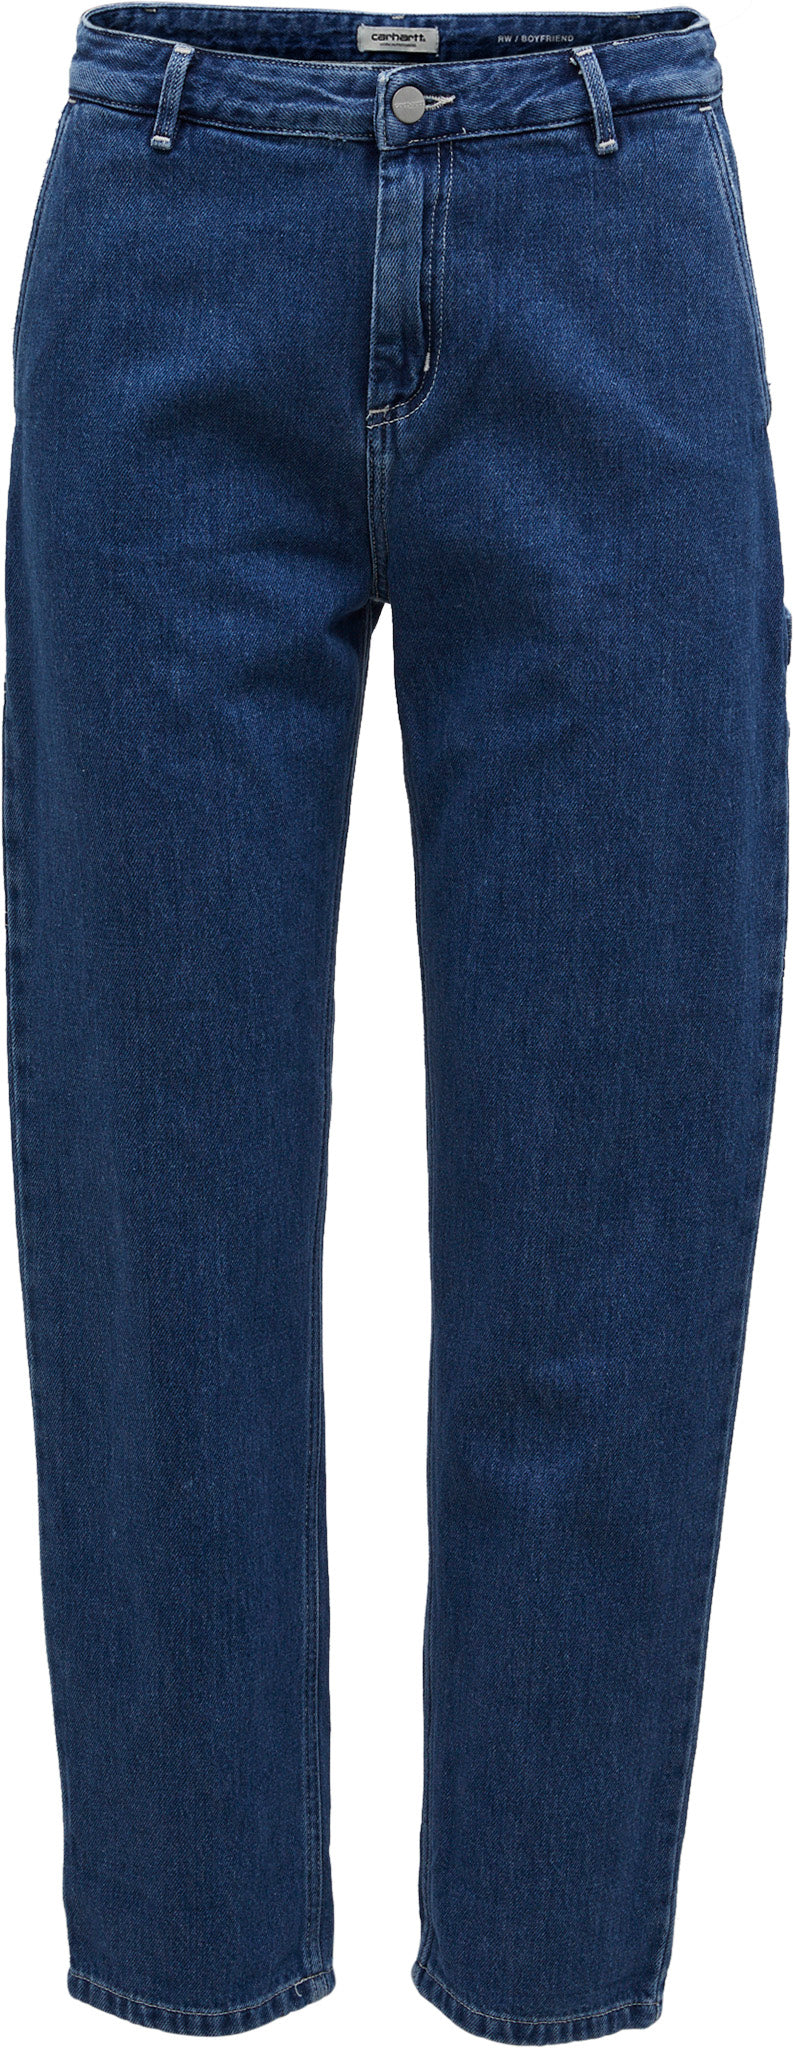 Carhartt WIP Pierce Women's Pants Blue I025268-0106